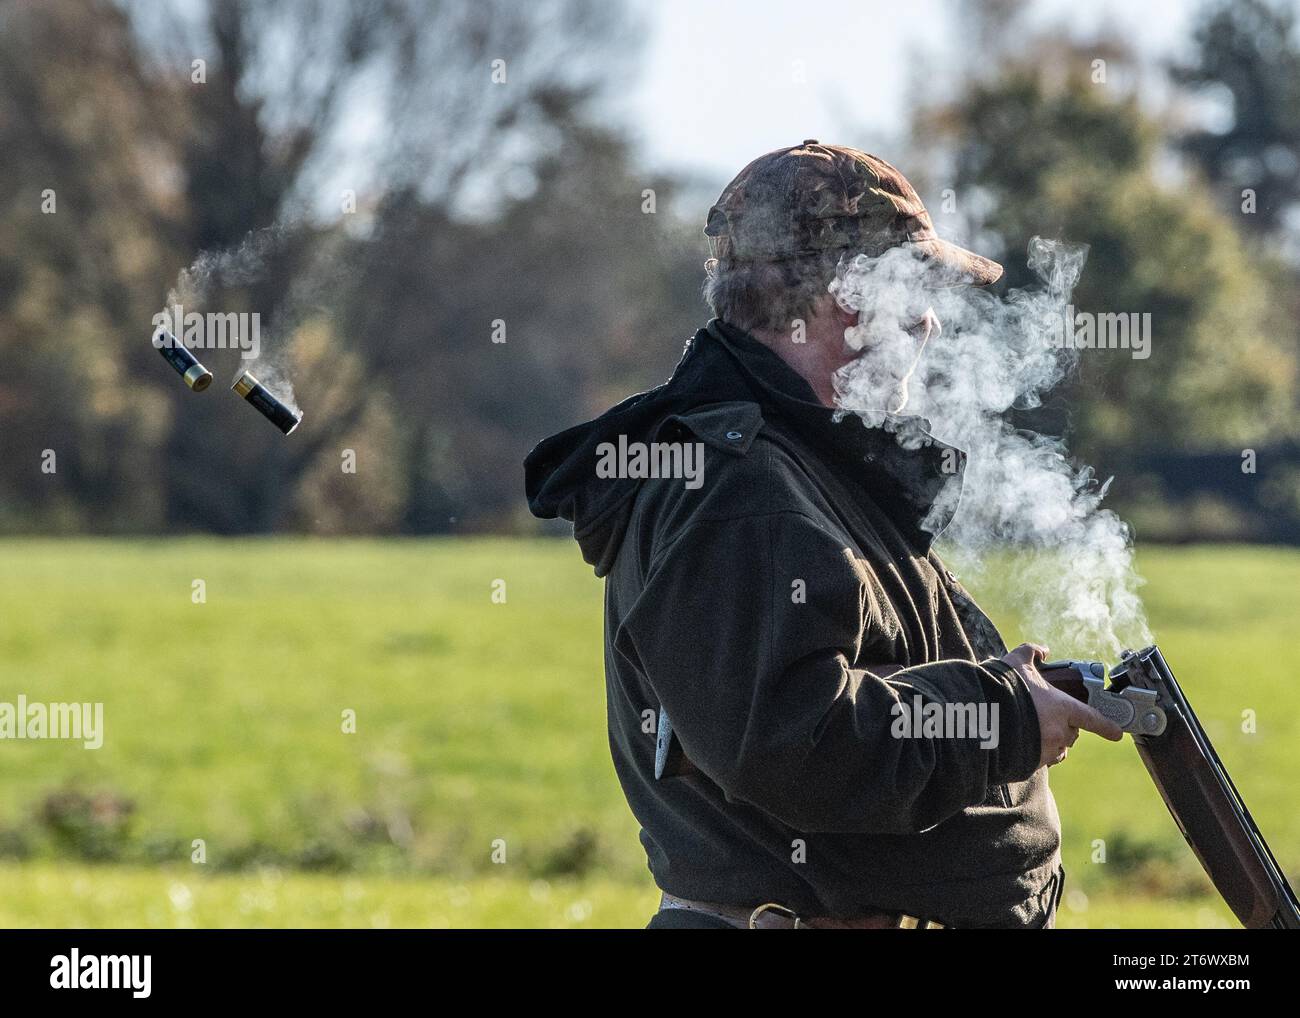 Smoking cartridges from a shotgun Stock Photo